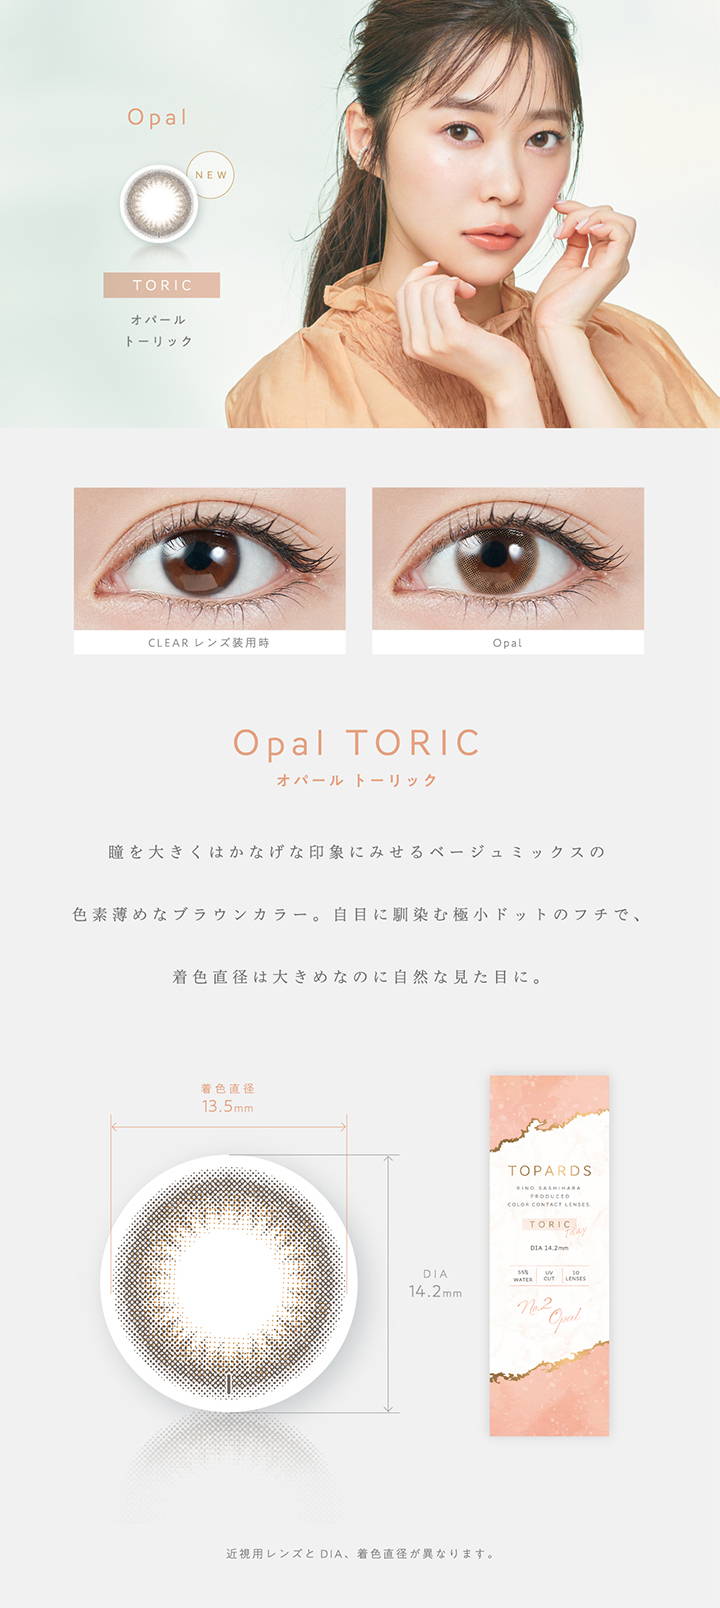 【乱視用:乱視度数:-1.25D】 Opal TORIC(オパールトーリック),新色,瞳を大きくはかなげな印象にみせるベージュミックスの色素薄めなブラウンカラー。自目になじむ極小ドットのフチで、直色直径は大きめなのに自然な見た目に。,着色直径13.5mm,DIA14.2mm|TOPARDS TORIC(トパーズトーリック)コンタクトレンズ